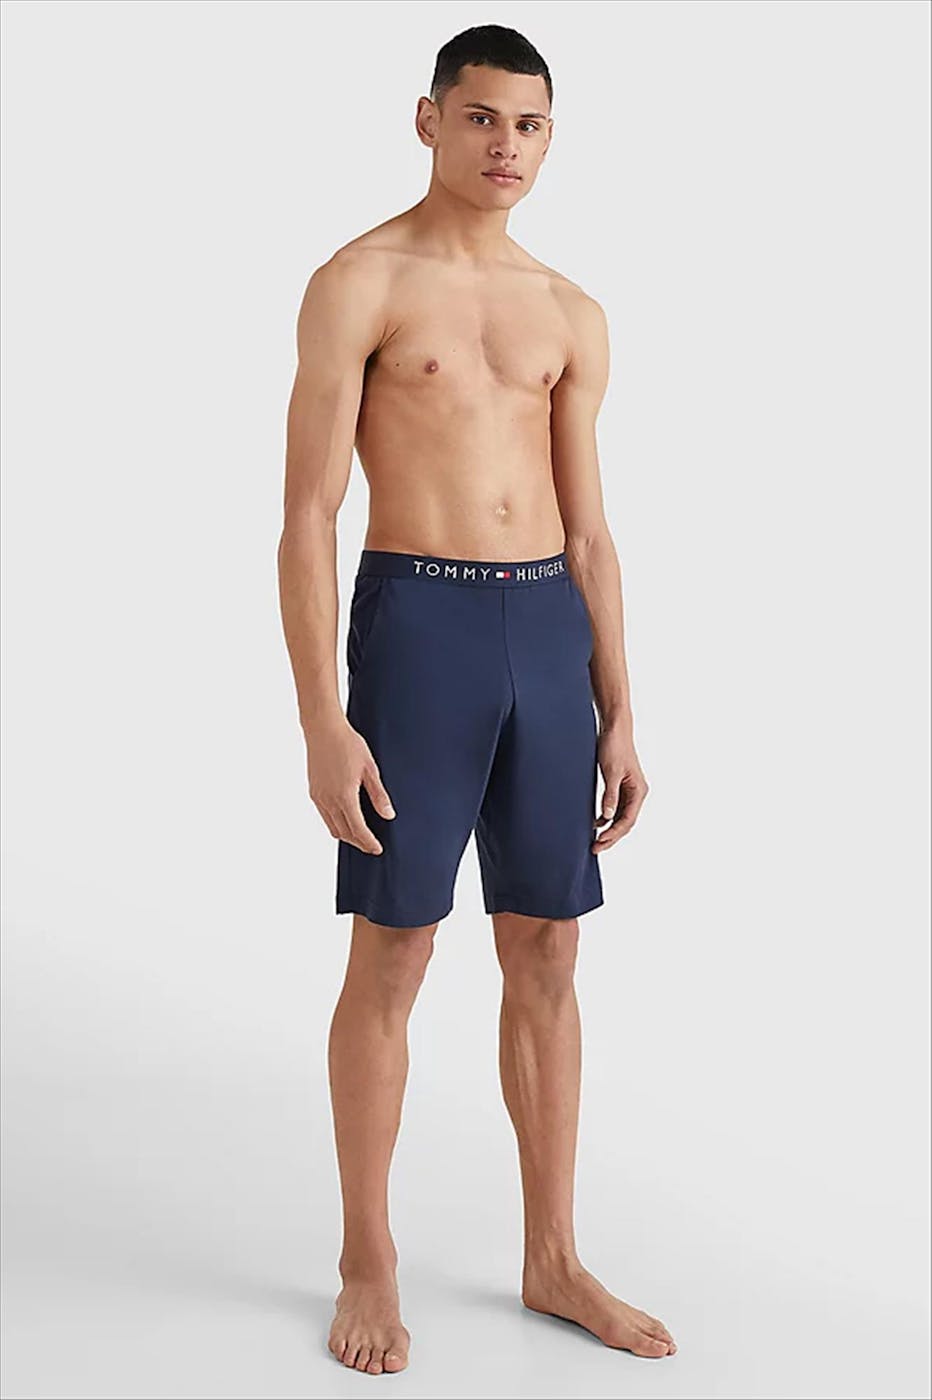 Tommy Hilfiger Underwear - Donkerblauwe Jersey short